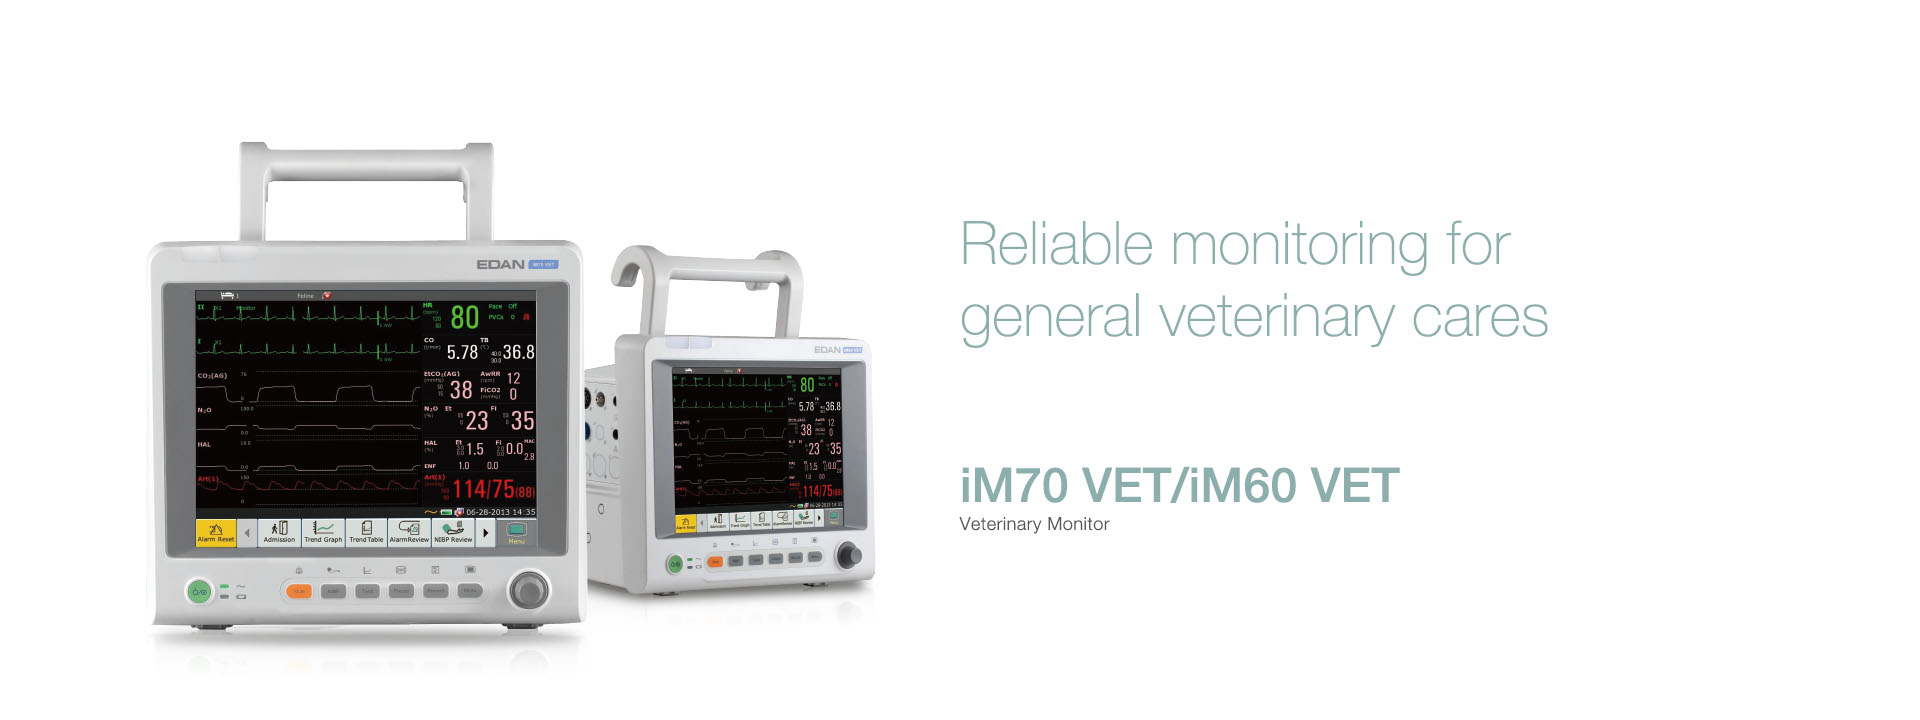 เครื่องติดตามการทำงานของหัวใจและสัญญาณชีพอัตโนมัติสำหรับสัตว์  iM60 VET/iM70 VET Veterinary Monitor  EDAN